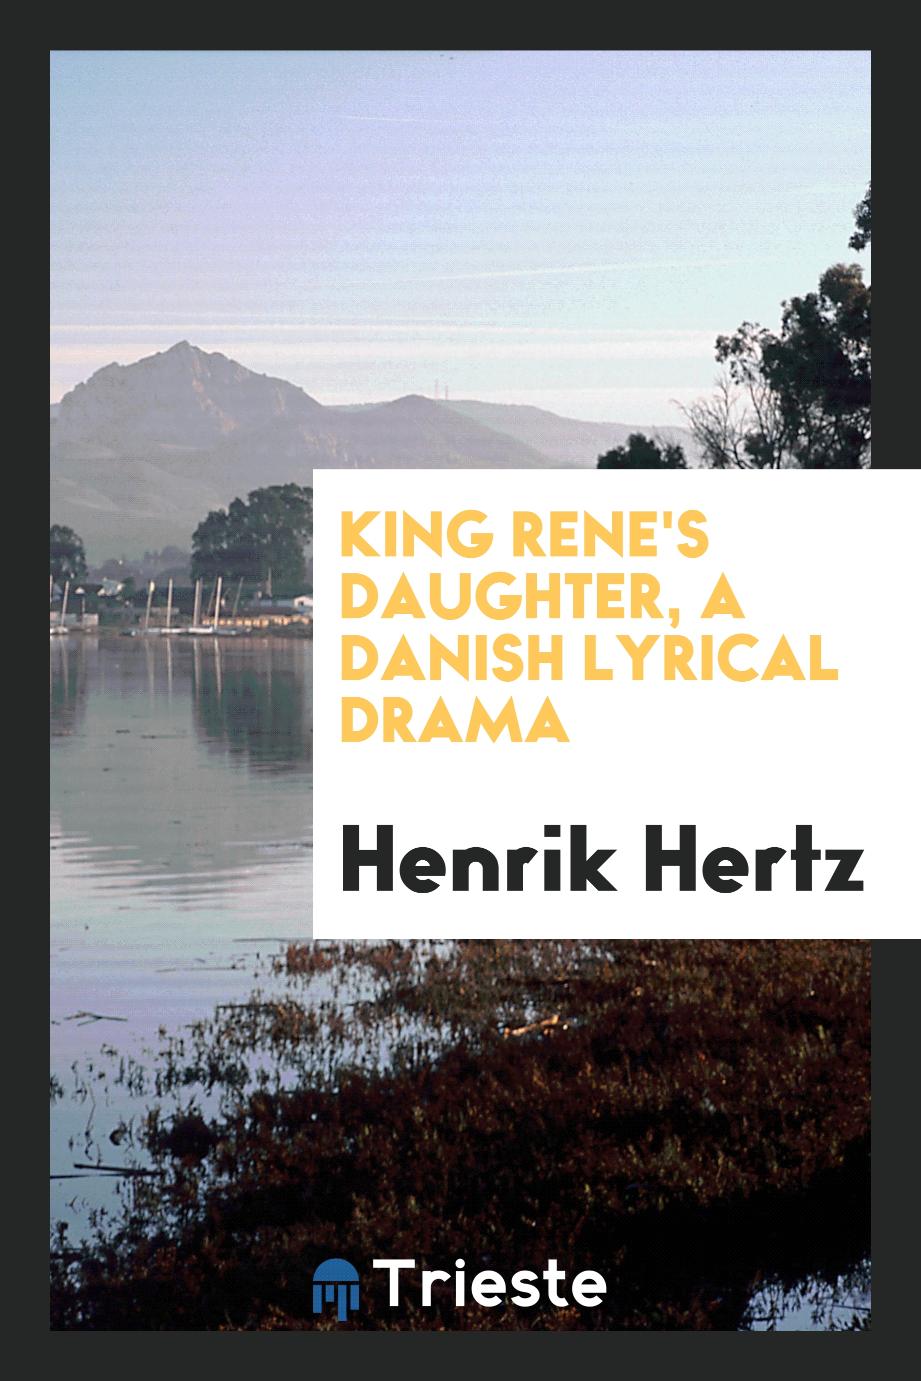 King Rene's daughter, a Danish lyrical drama